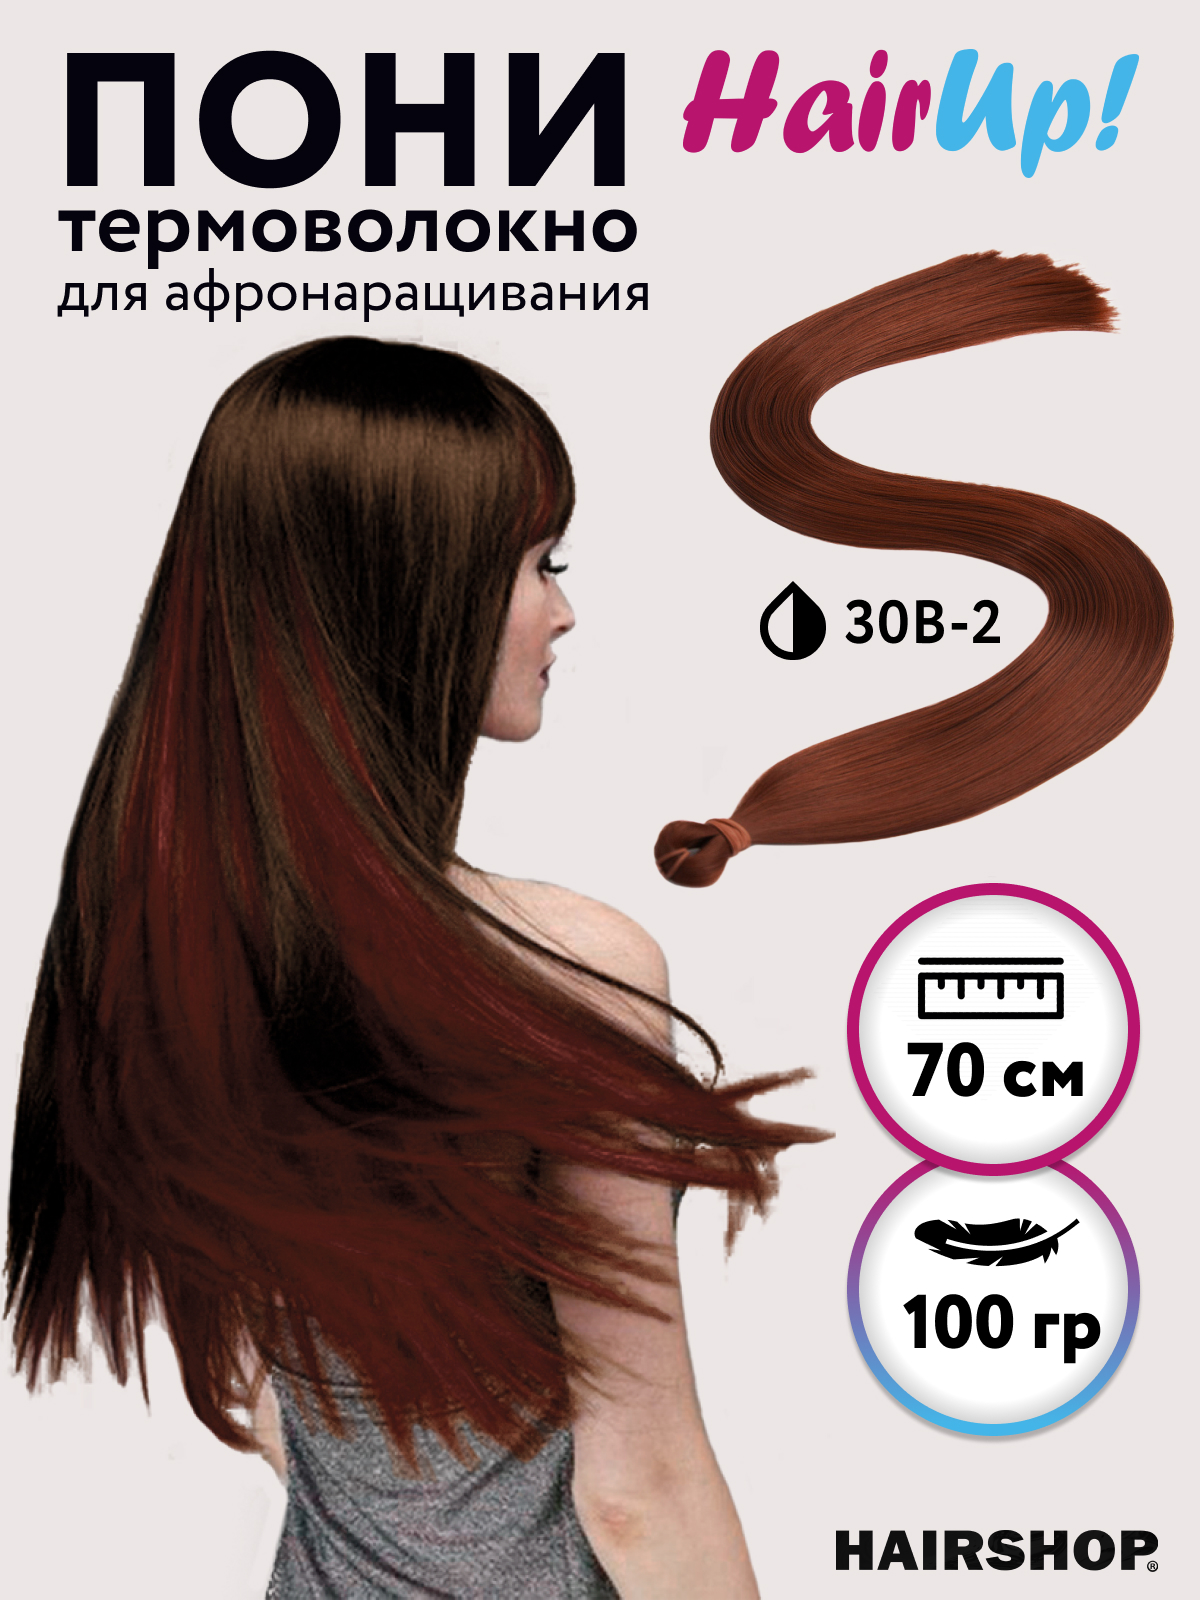 Канекалон Hairshop Пони HairUp для точечного афронаращивания прямые 30B-2 1,4м 100г канекалон hairshop пони hairup для точечного афронаращивания прямые 118 1 бордо 1 4м 100г